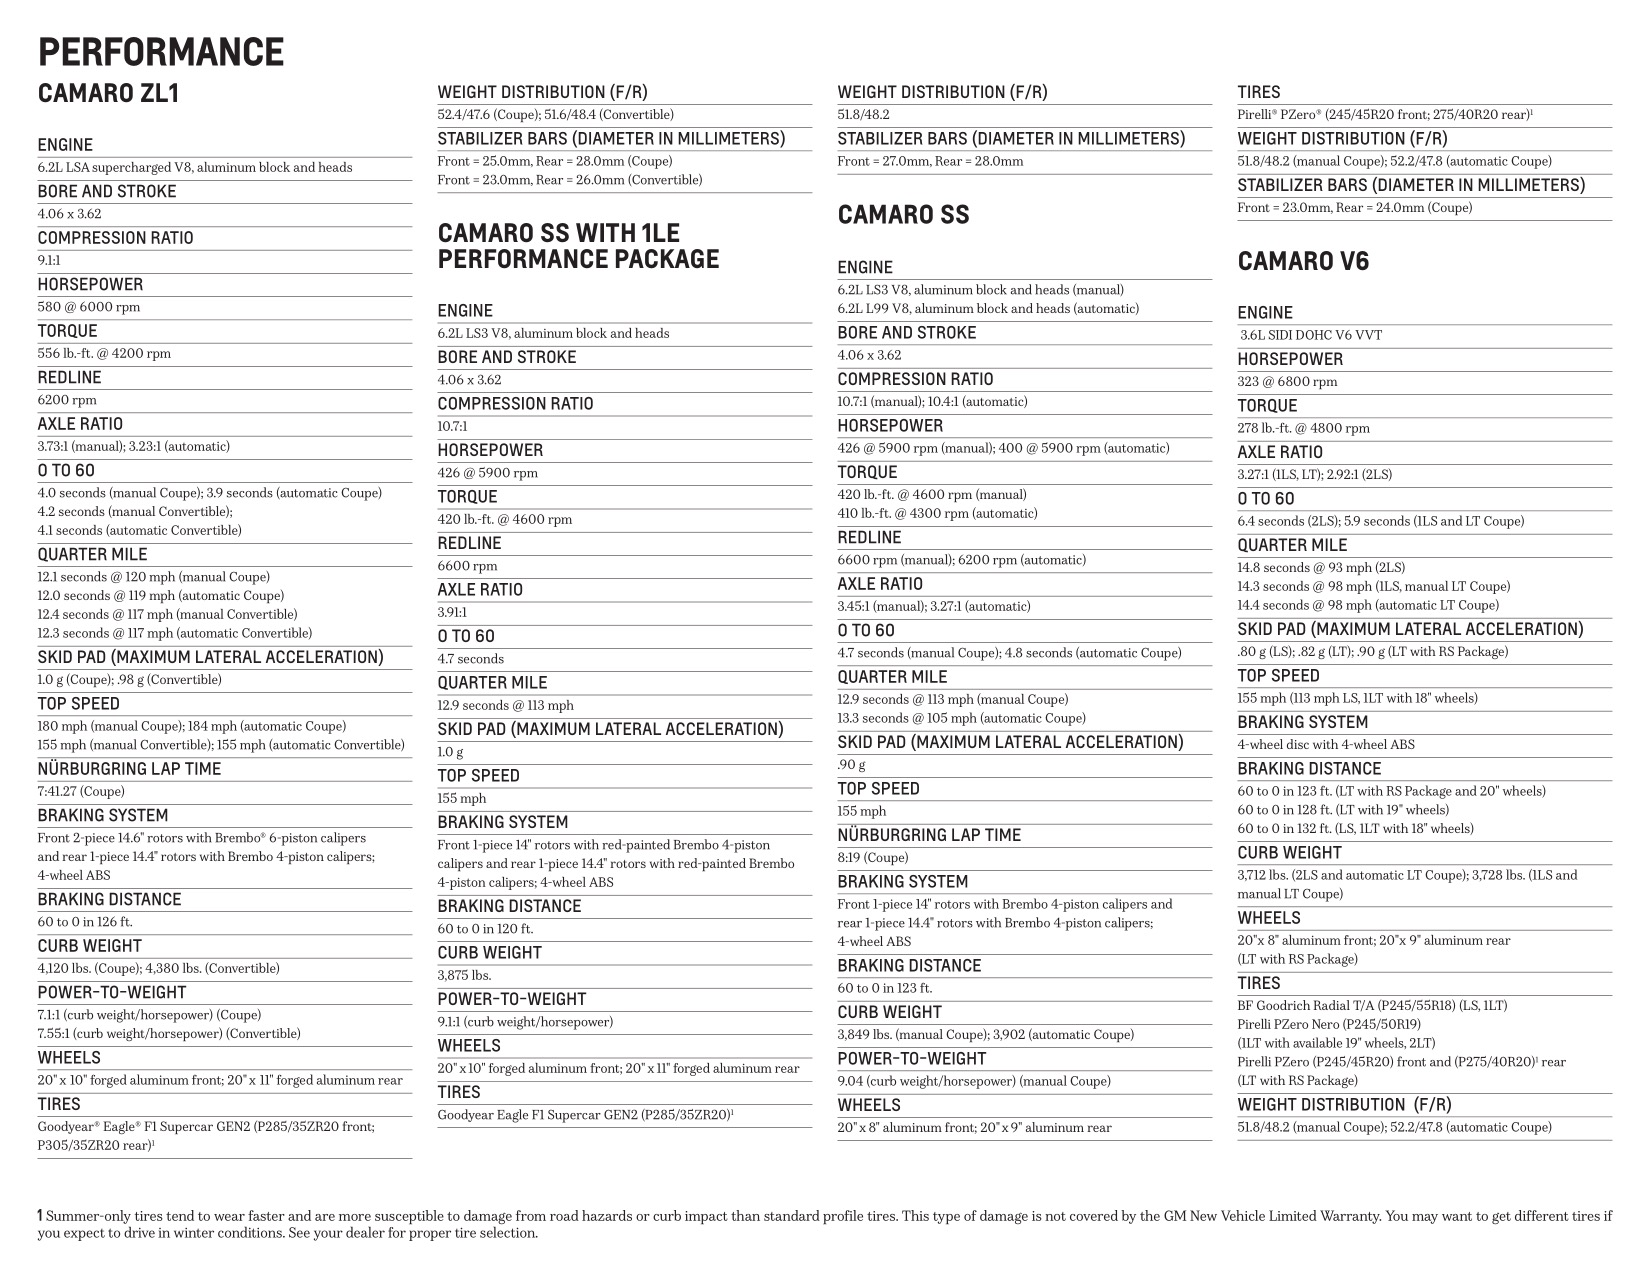 2013 Chev Camaro Brochure Page 20